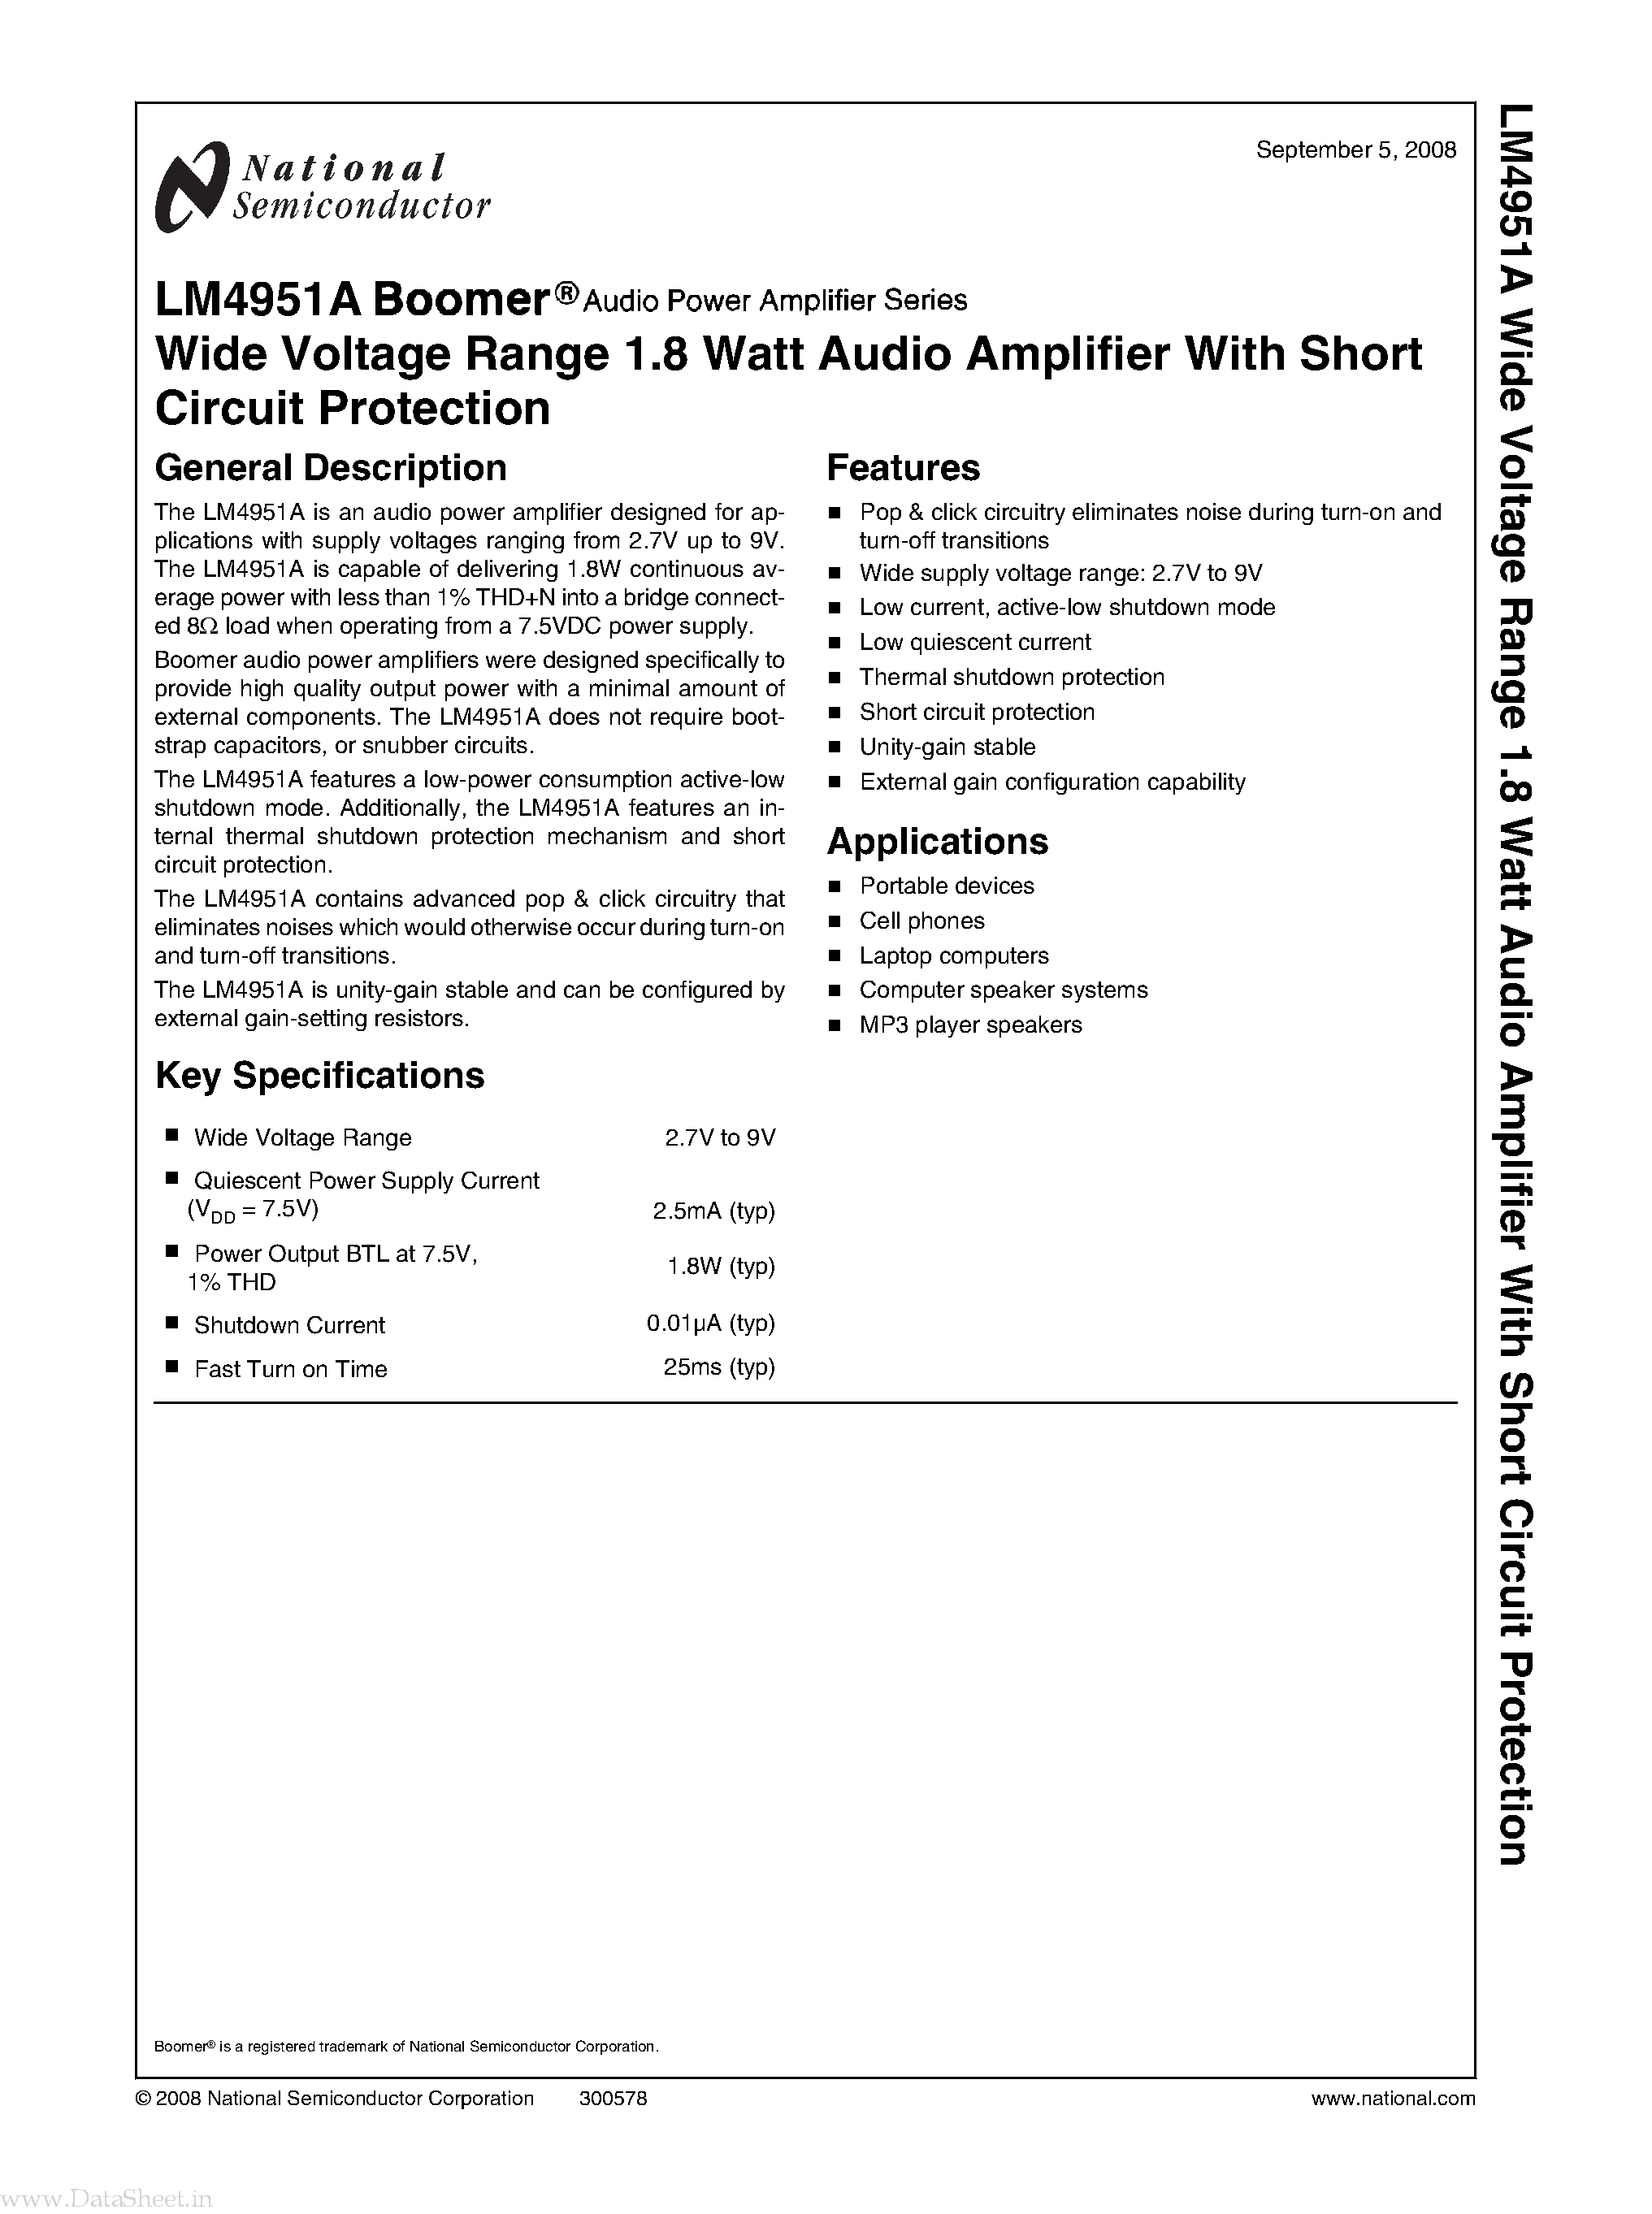 Datasheet LM4951A - Wide Voltage Range 1.8 Watt Audio Amplifier page 1